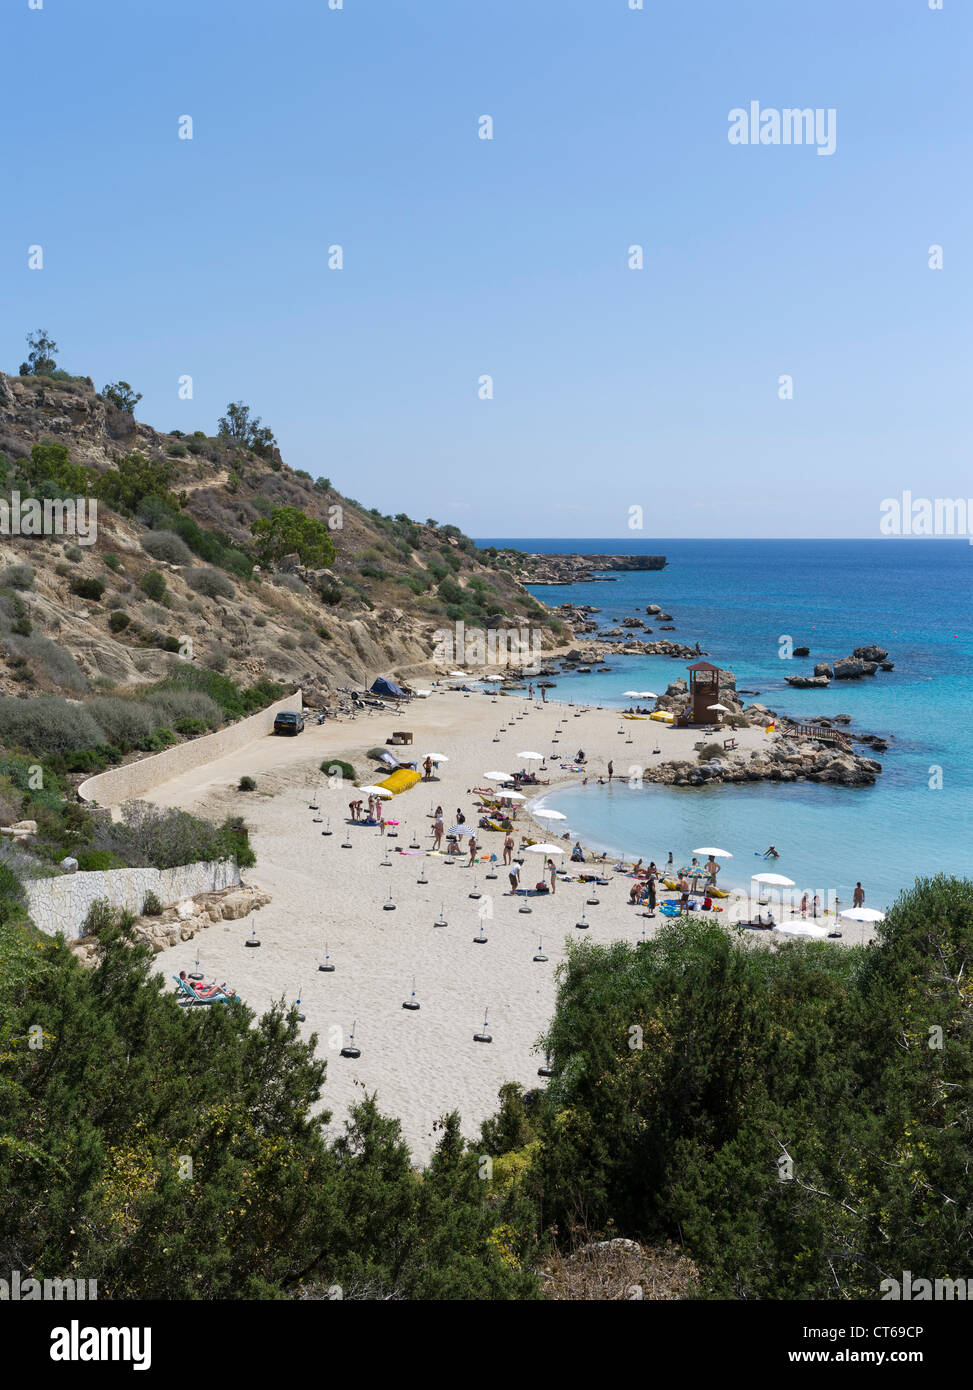 dh Grèce île KONOS BAY SOUTH CYPRUS Sandy plage ensoleillée les baigneurs de soleil et les nageurs plages côte baies Banque D'Images